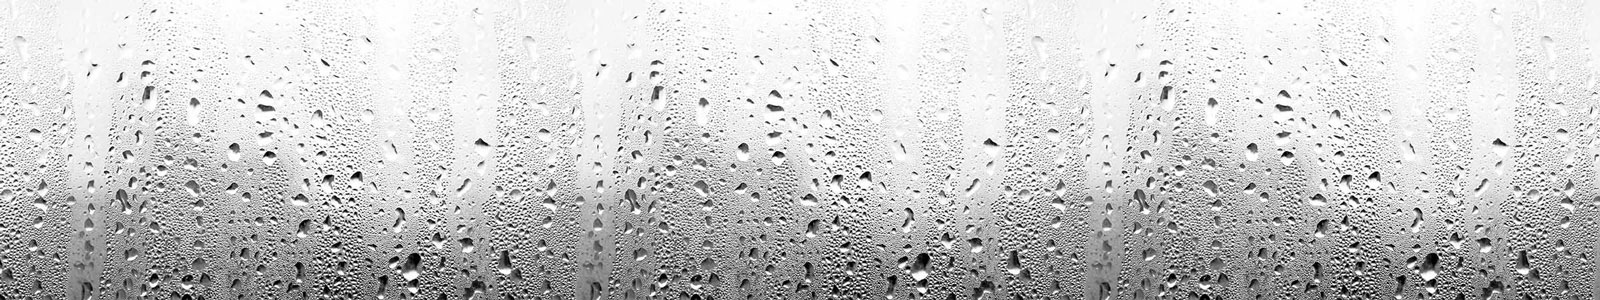 №3926 - Капли воды на стекле, черно-белый фон